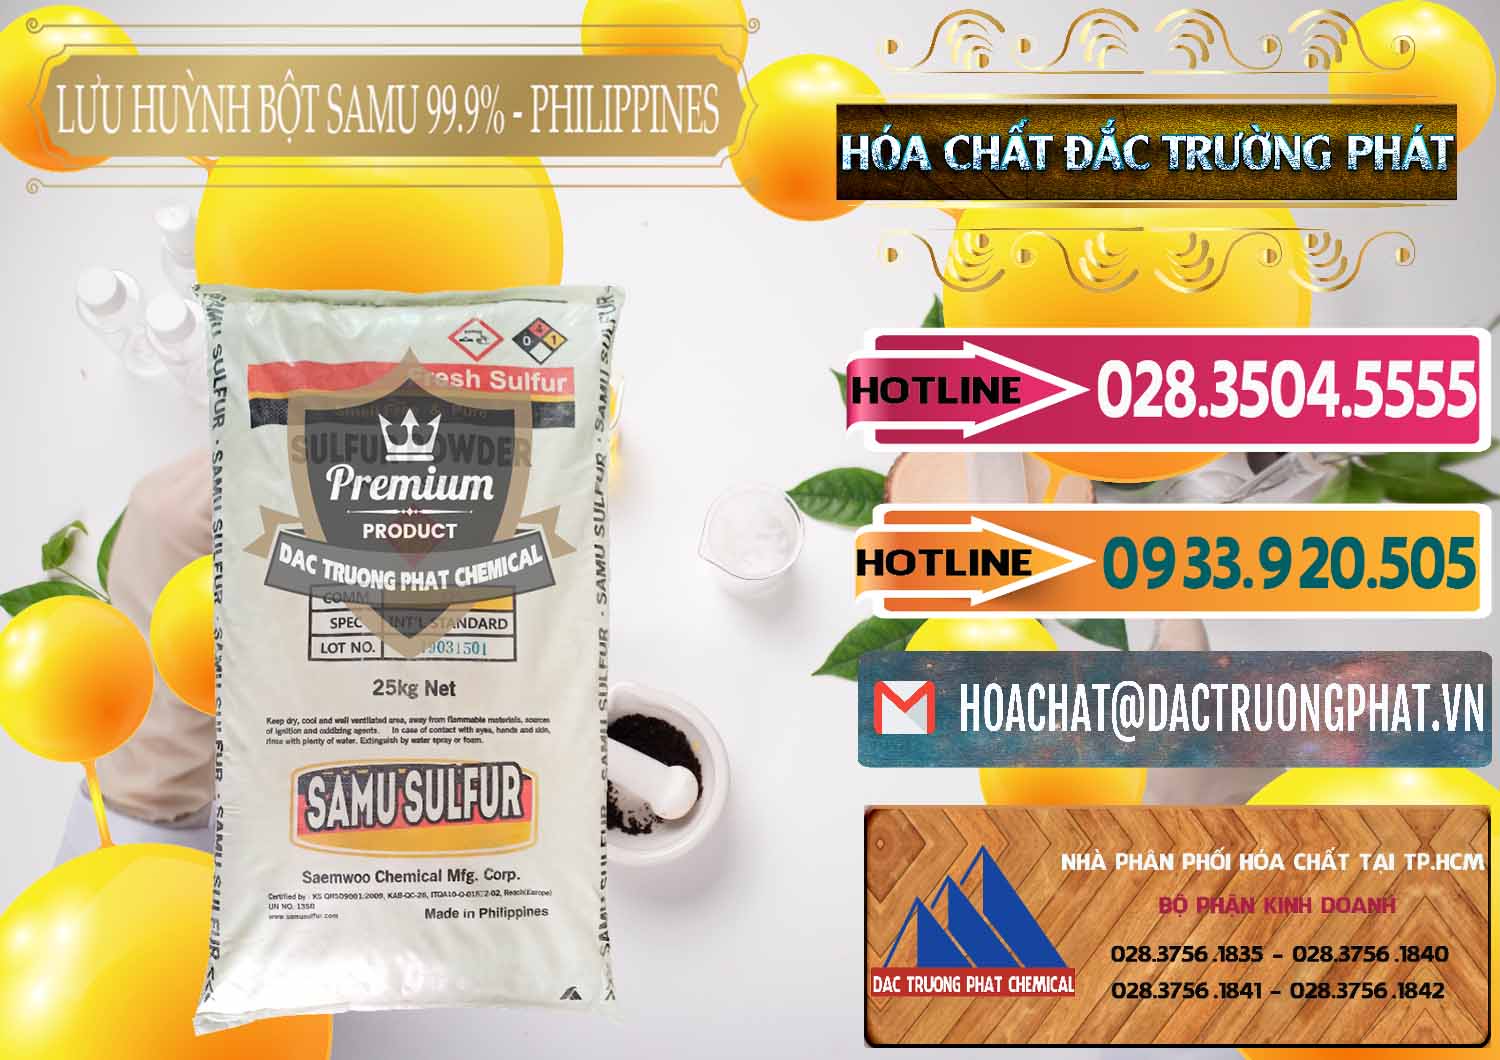 Cty chuyên cung ứng ( bán ) Lưu huỳnh Bột - Sulfur Powder Samu Philippines - 0201 - Bán và phân phối hóa chất tại TP.HCM - dactruongphat.vn